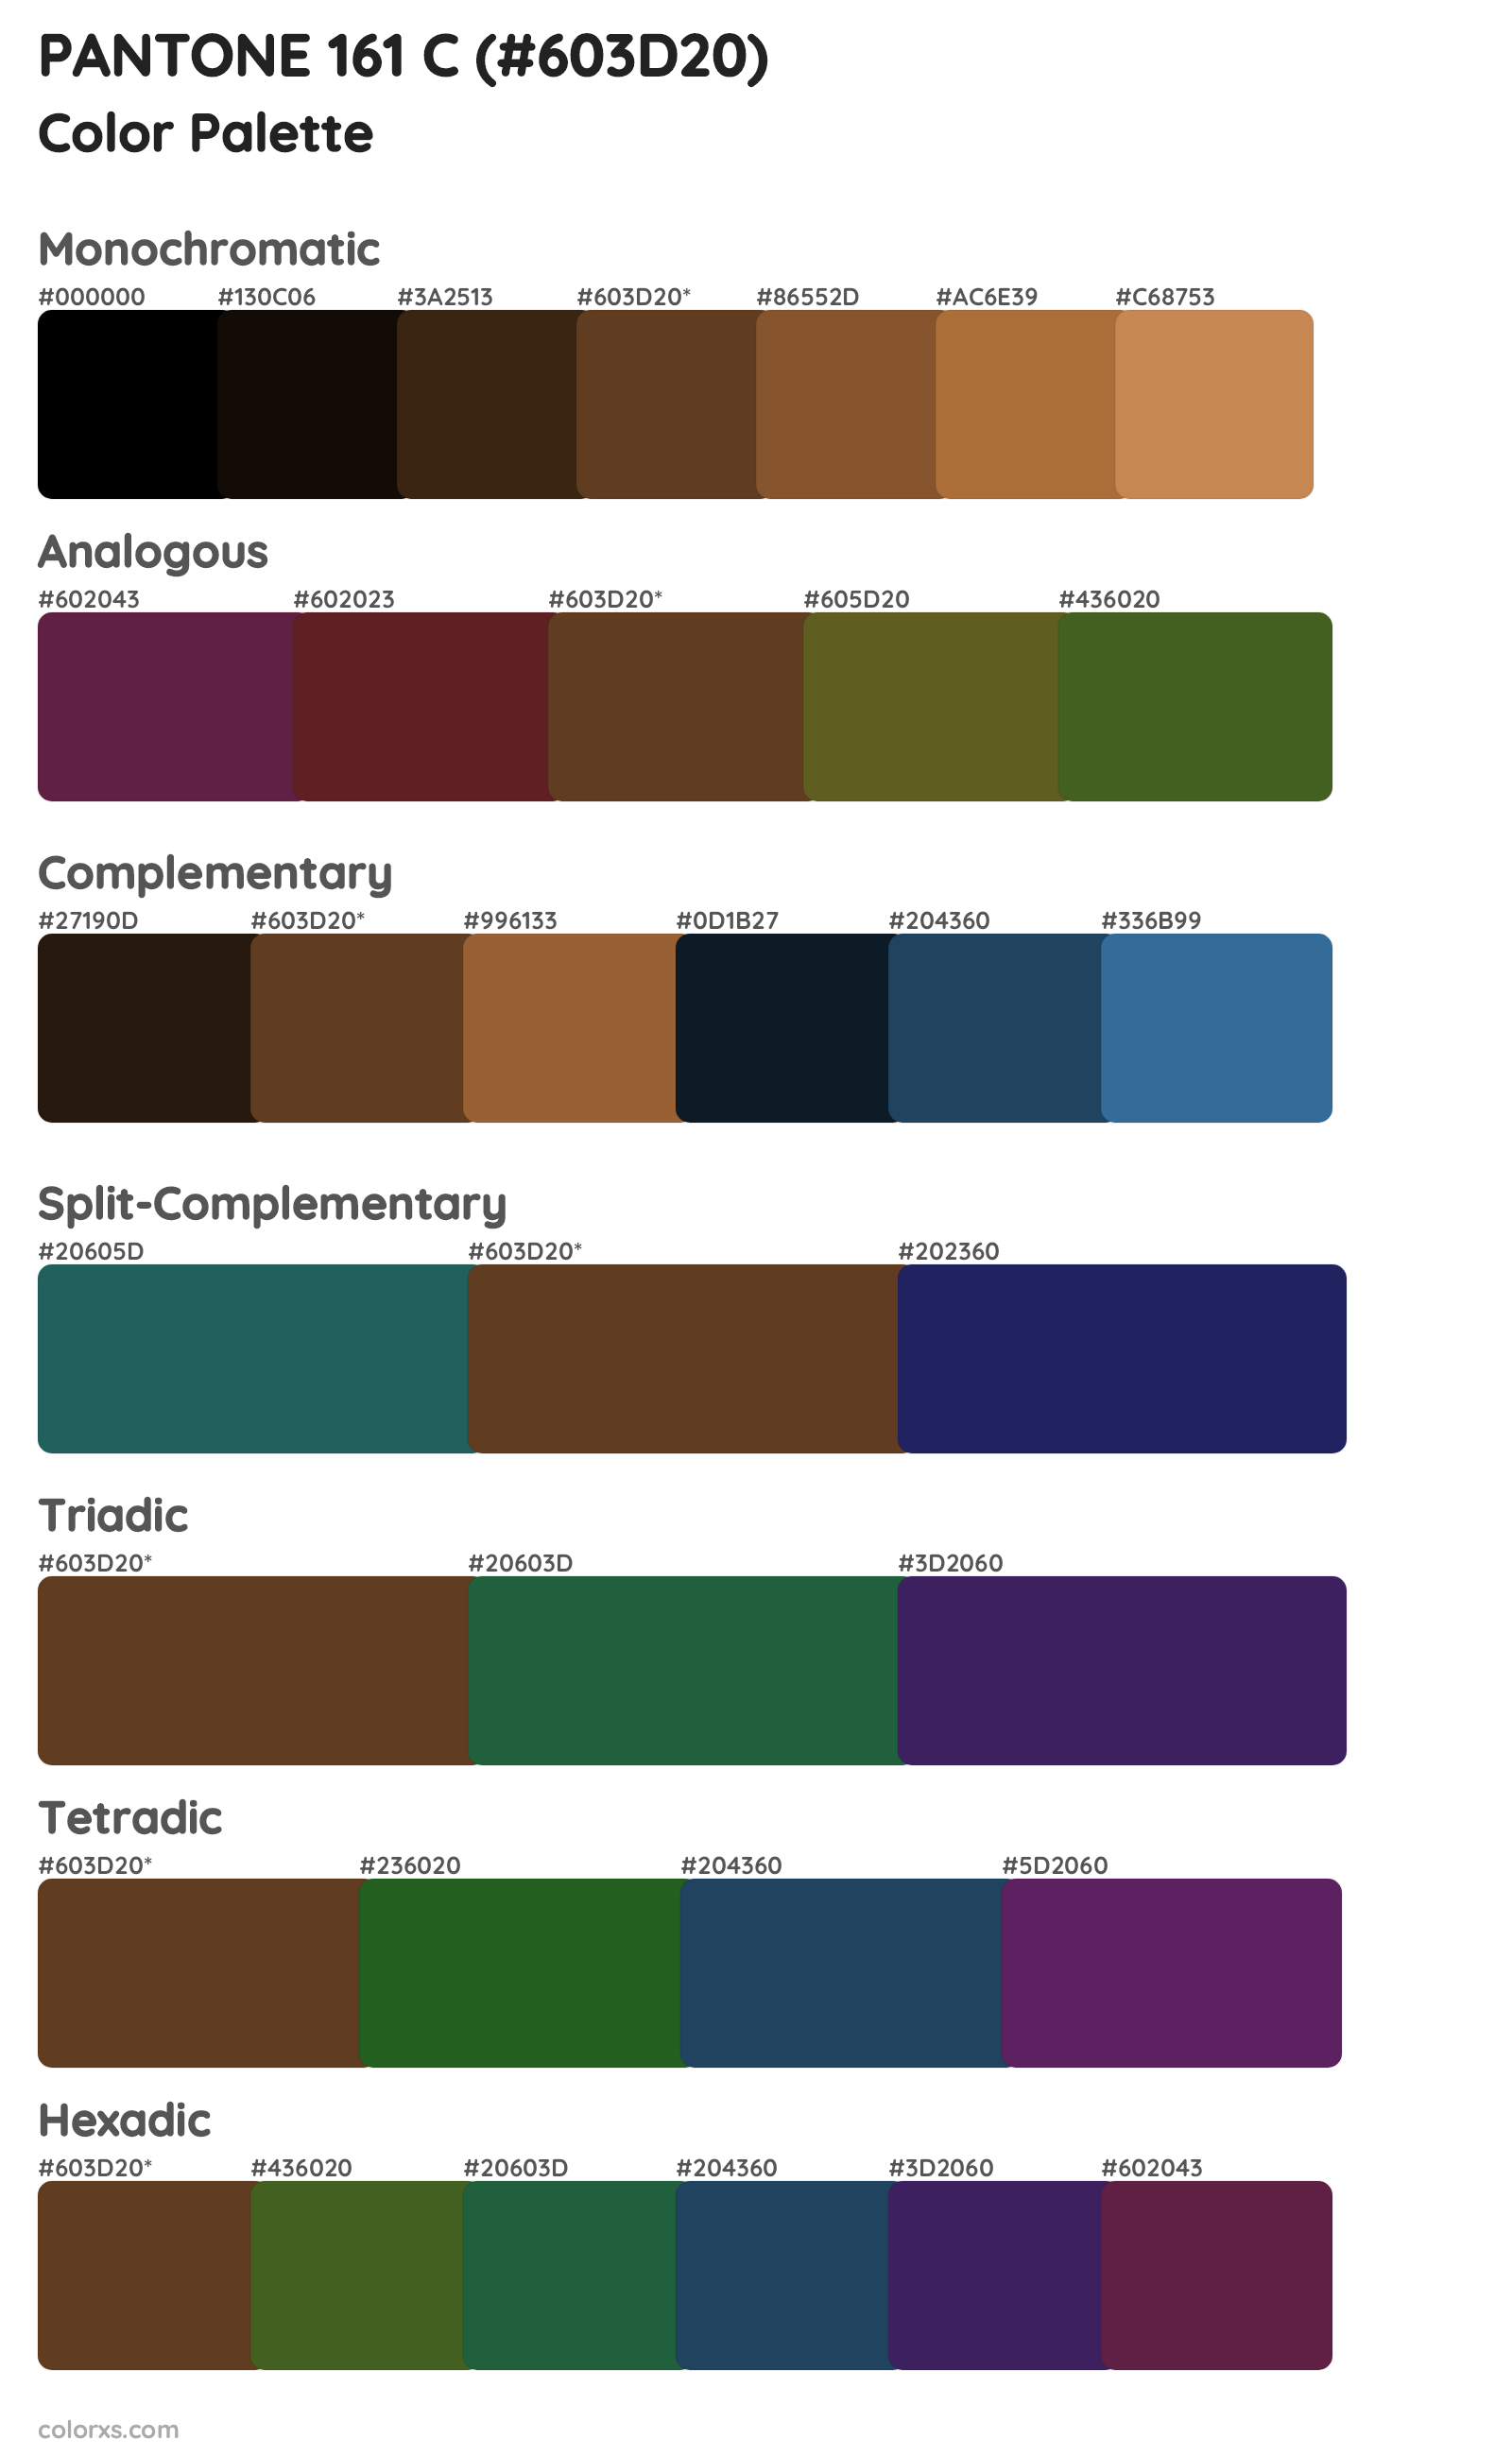 PANTONE 161 C Color Scheme Palettes